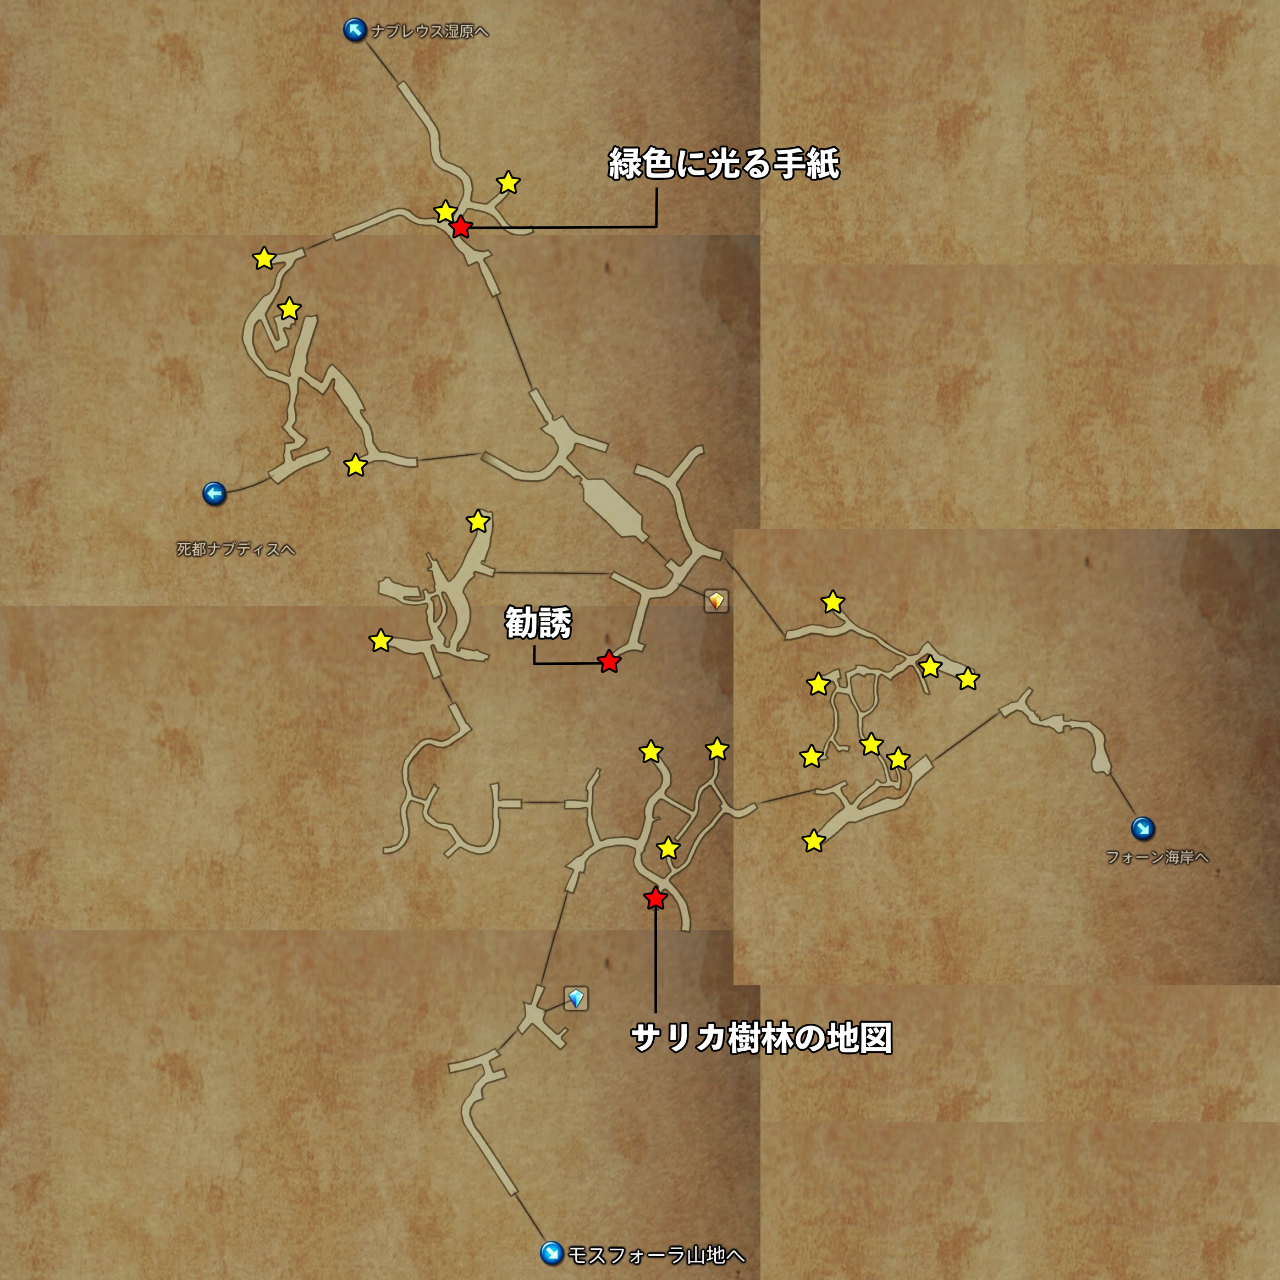 【FF12ザ ゾディアック エイジ】サリカ樹林のマップ/トレジャー FF12 ザゾディアックエイジ攻略まとめ